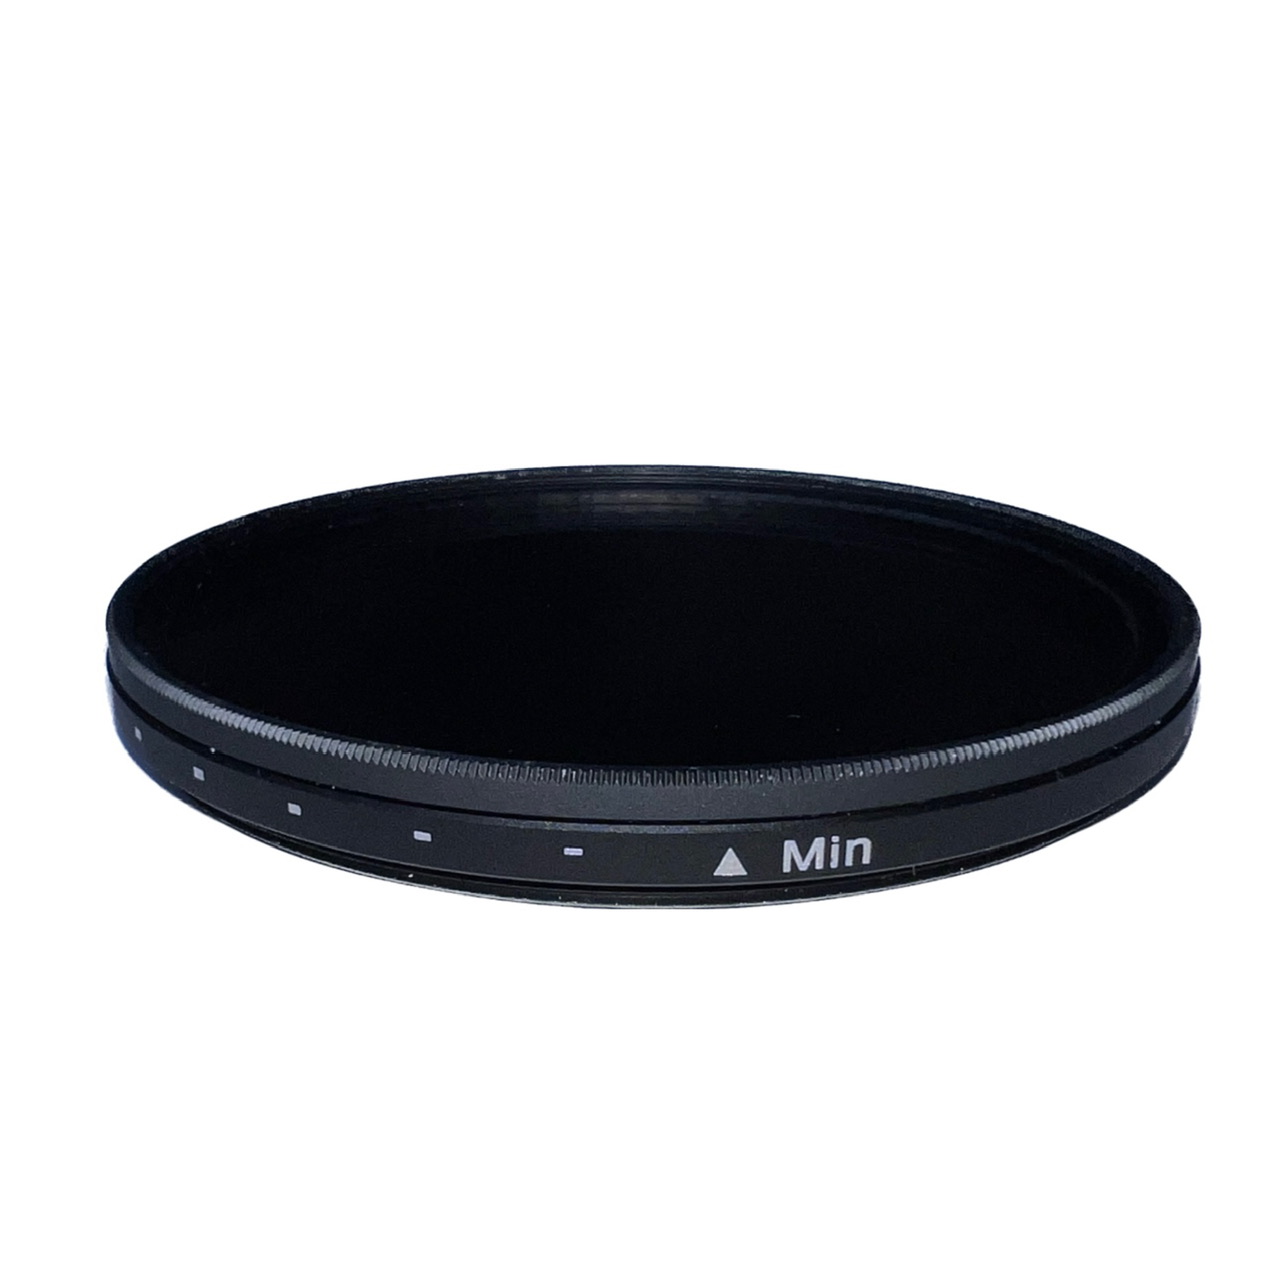 فیلتر لنز تامرون مدل NDX-67mm